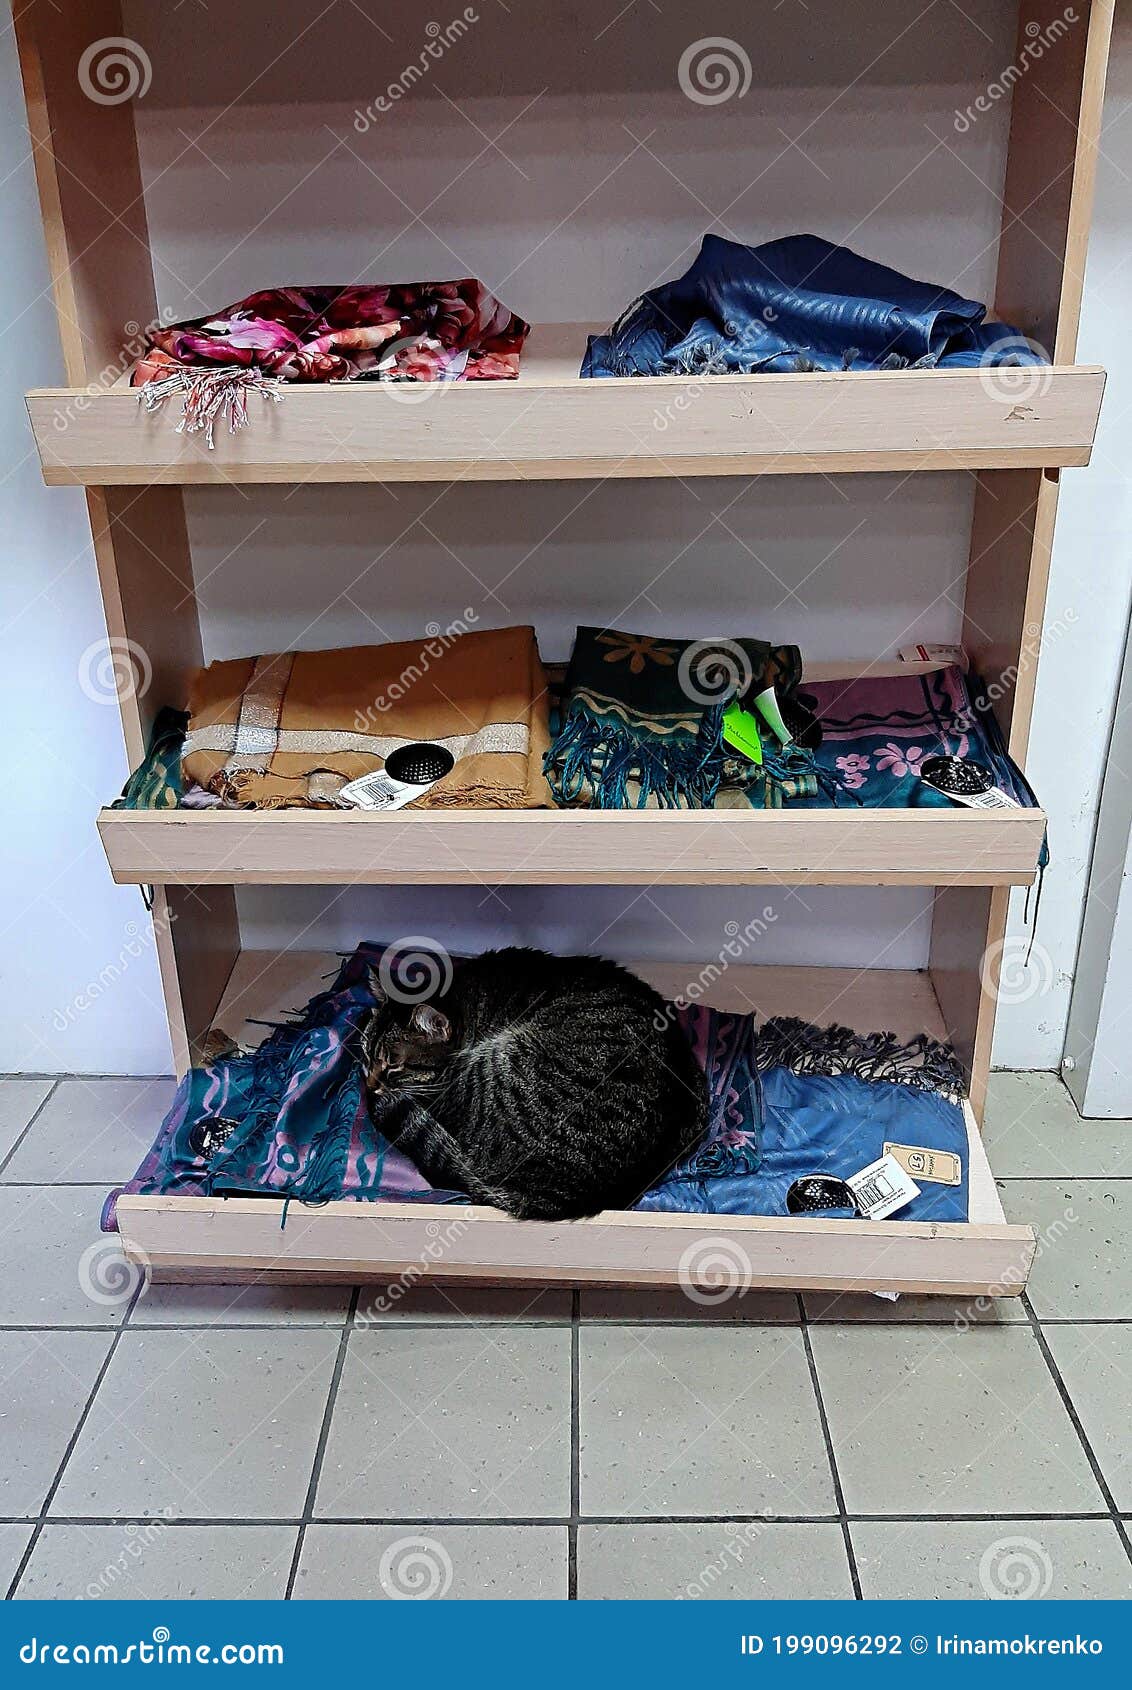 Gato Tendido En La Tienda El Estante Con Foto - Imagen de departamento, estantes: 199096292